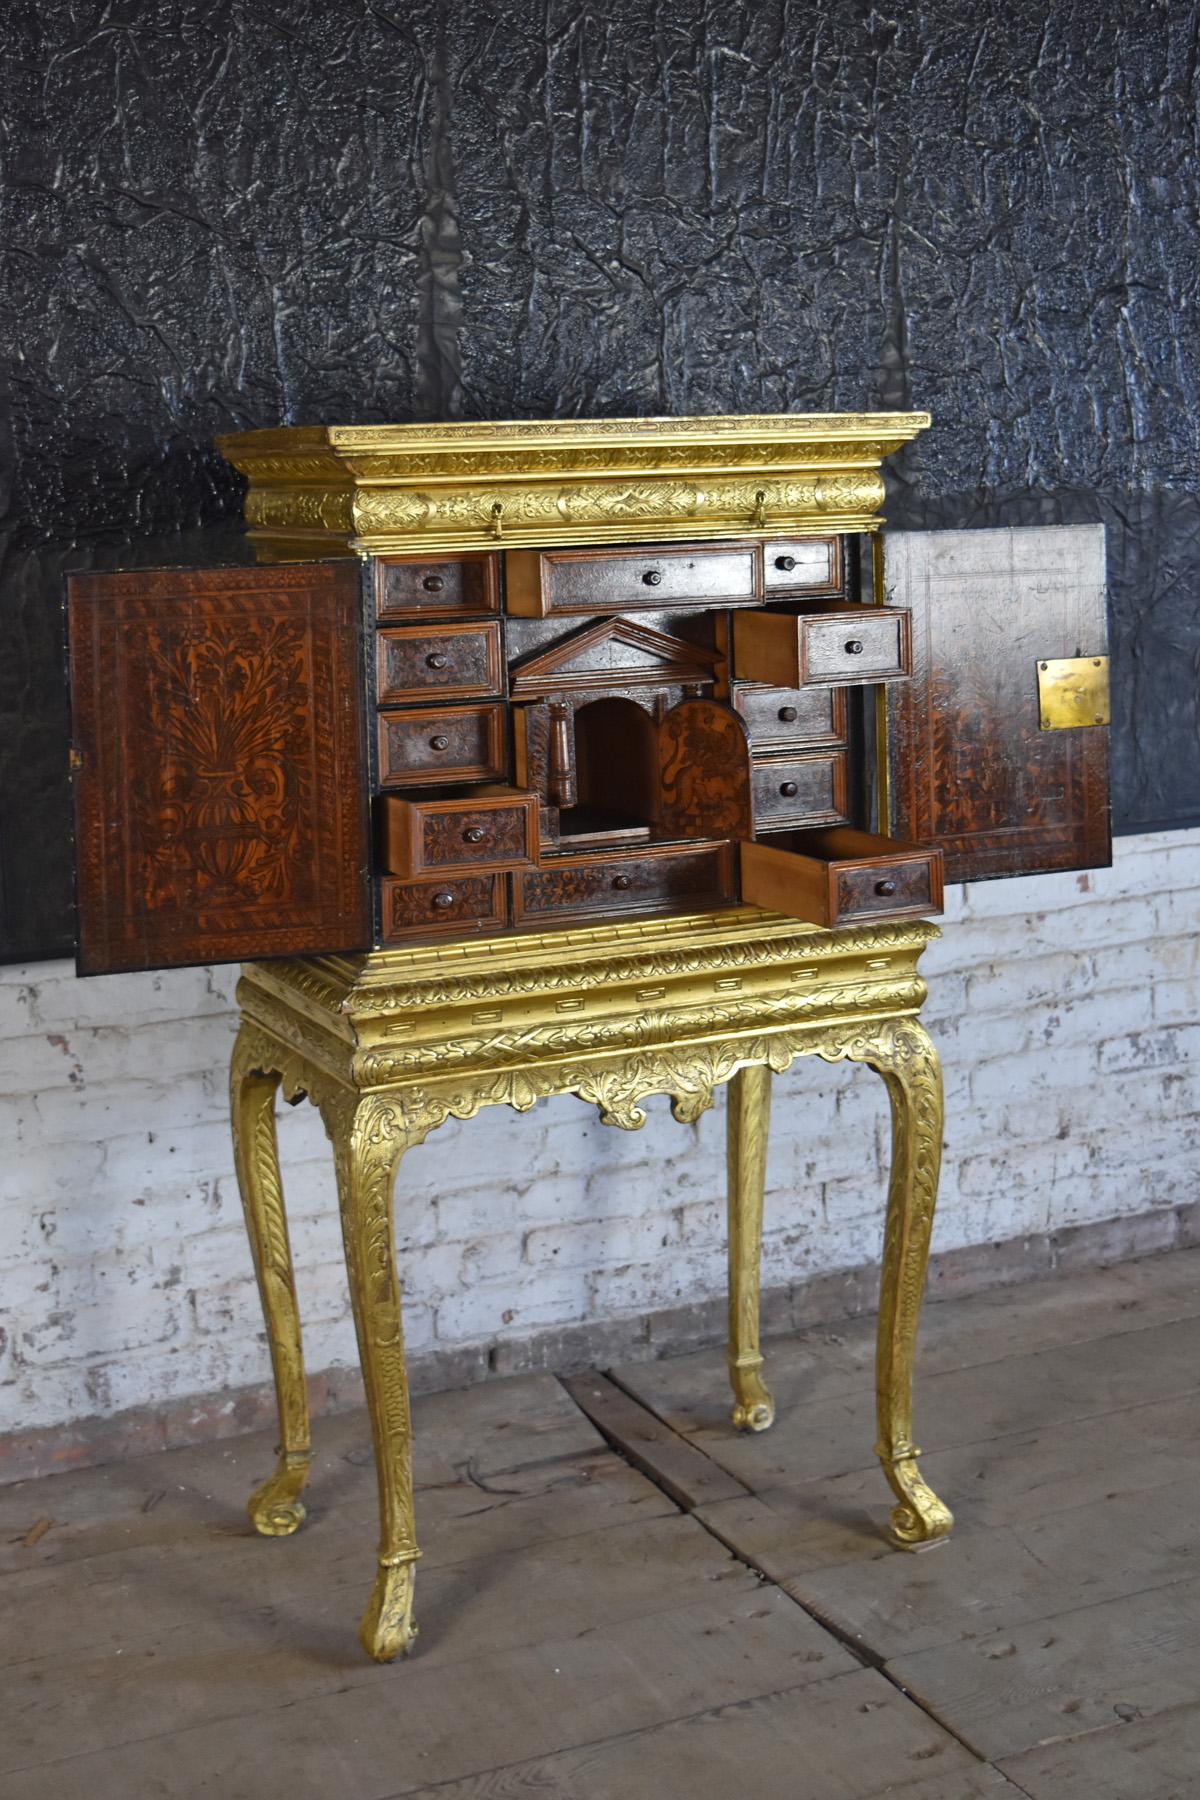 Petit, très décoratif cabinet anglais doré sur pied, avec un intérieur italien du 17e siècle en tisonnier présentant un système complexe de tiroirs, y compris de nombreux tiroirs cachés. Reconfiguré au 19e siècle. L'armoire à bijoux